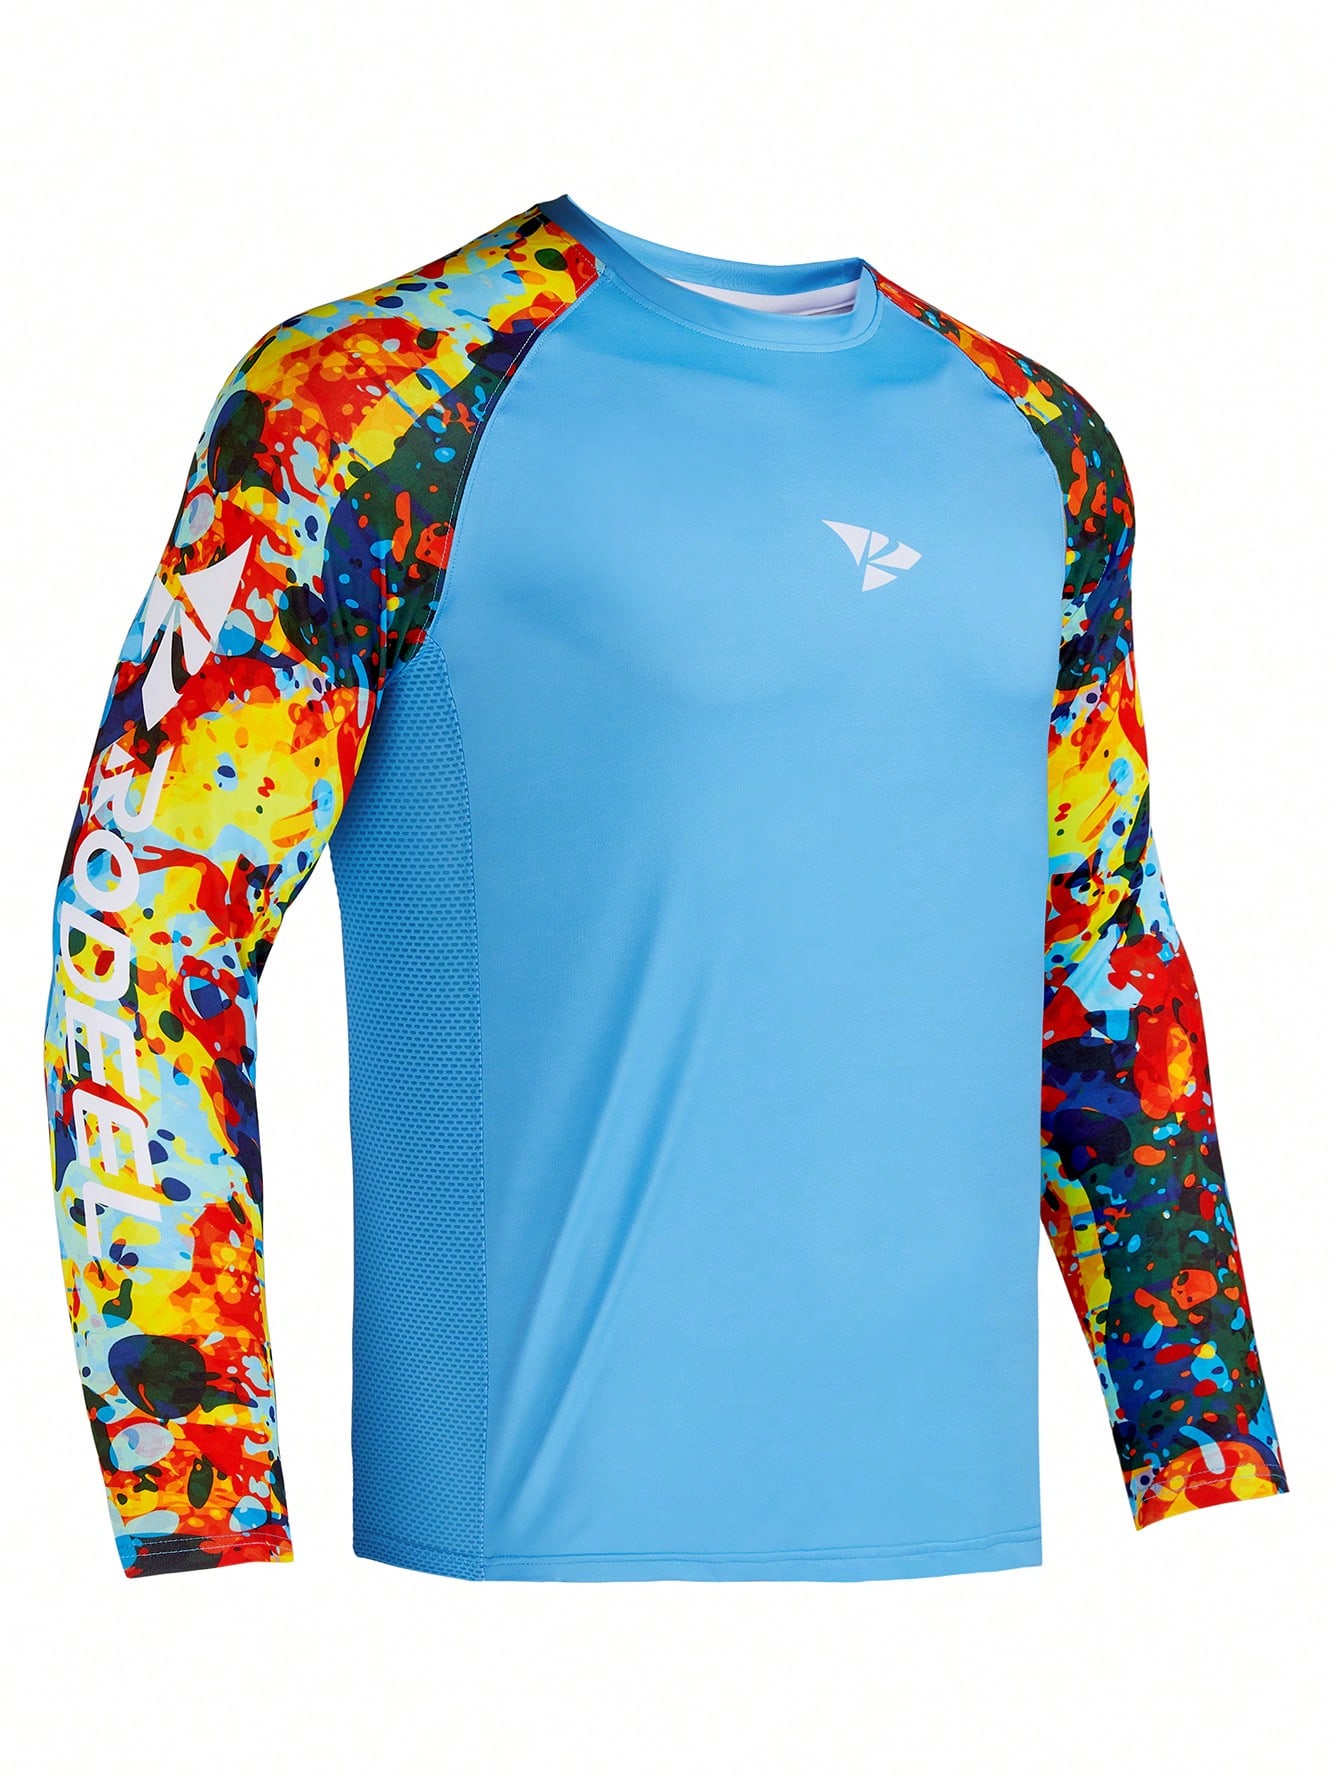 RODEEL Мужская рубашка с защитой от солнца, голубые новинка 2021 походные и рыболовные рубашки gamakatsu спортивная быстросохнущая мужская одежда для рыбалки одежда для велоспорта и рыбалки